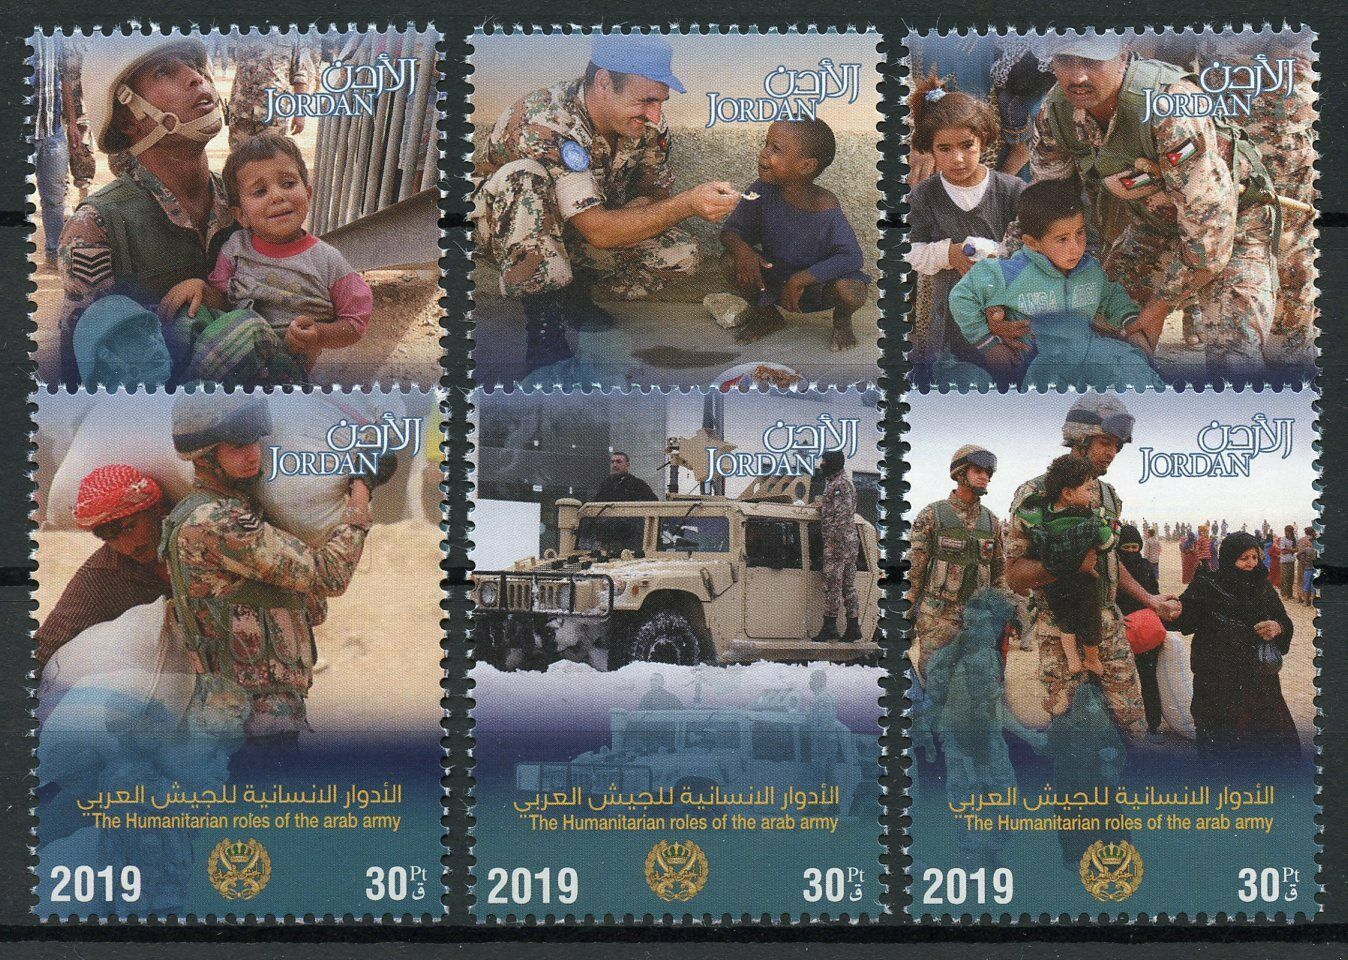 Jordan Military Stamps 2019 MNH Humanitarian Roles of Arab Army